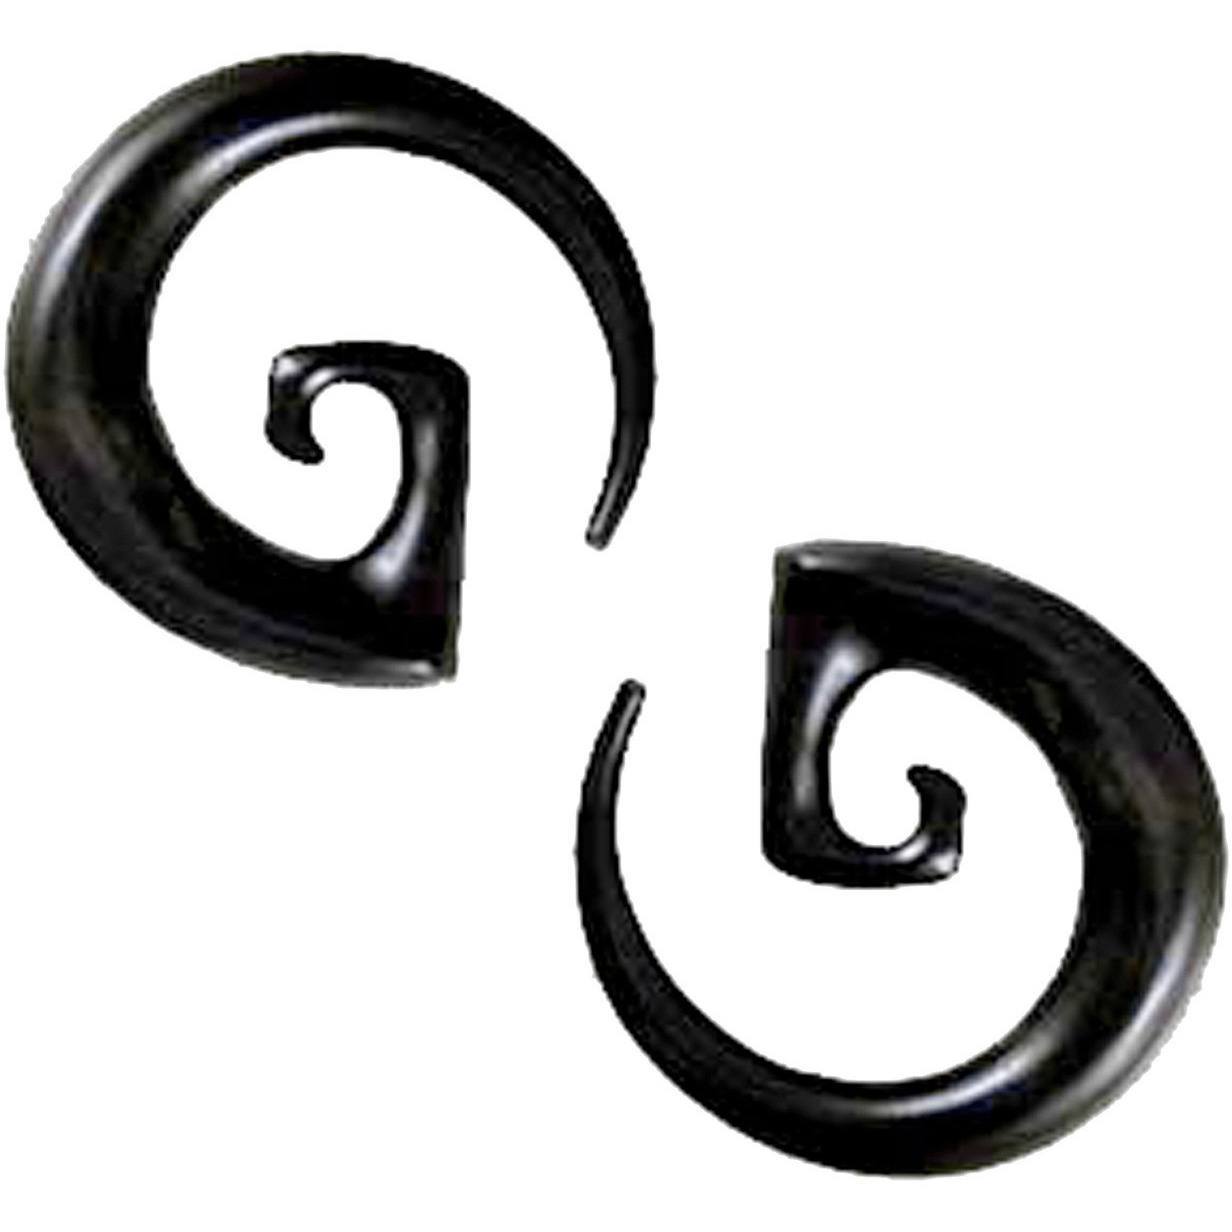 Body Jewelry :|: Bohemian Spiral, black. 00g, Spiral Body Jewelry.